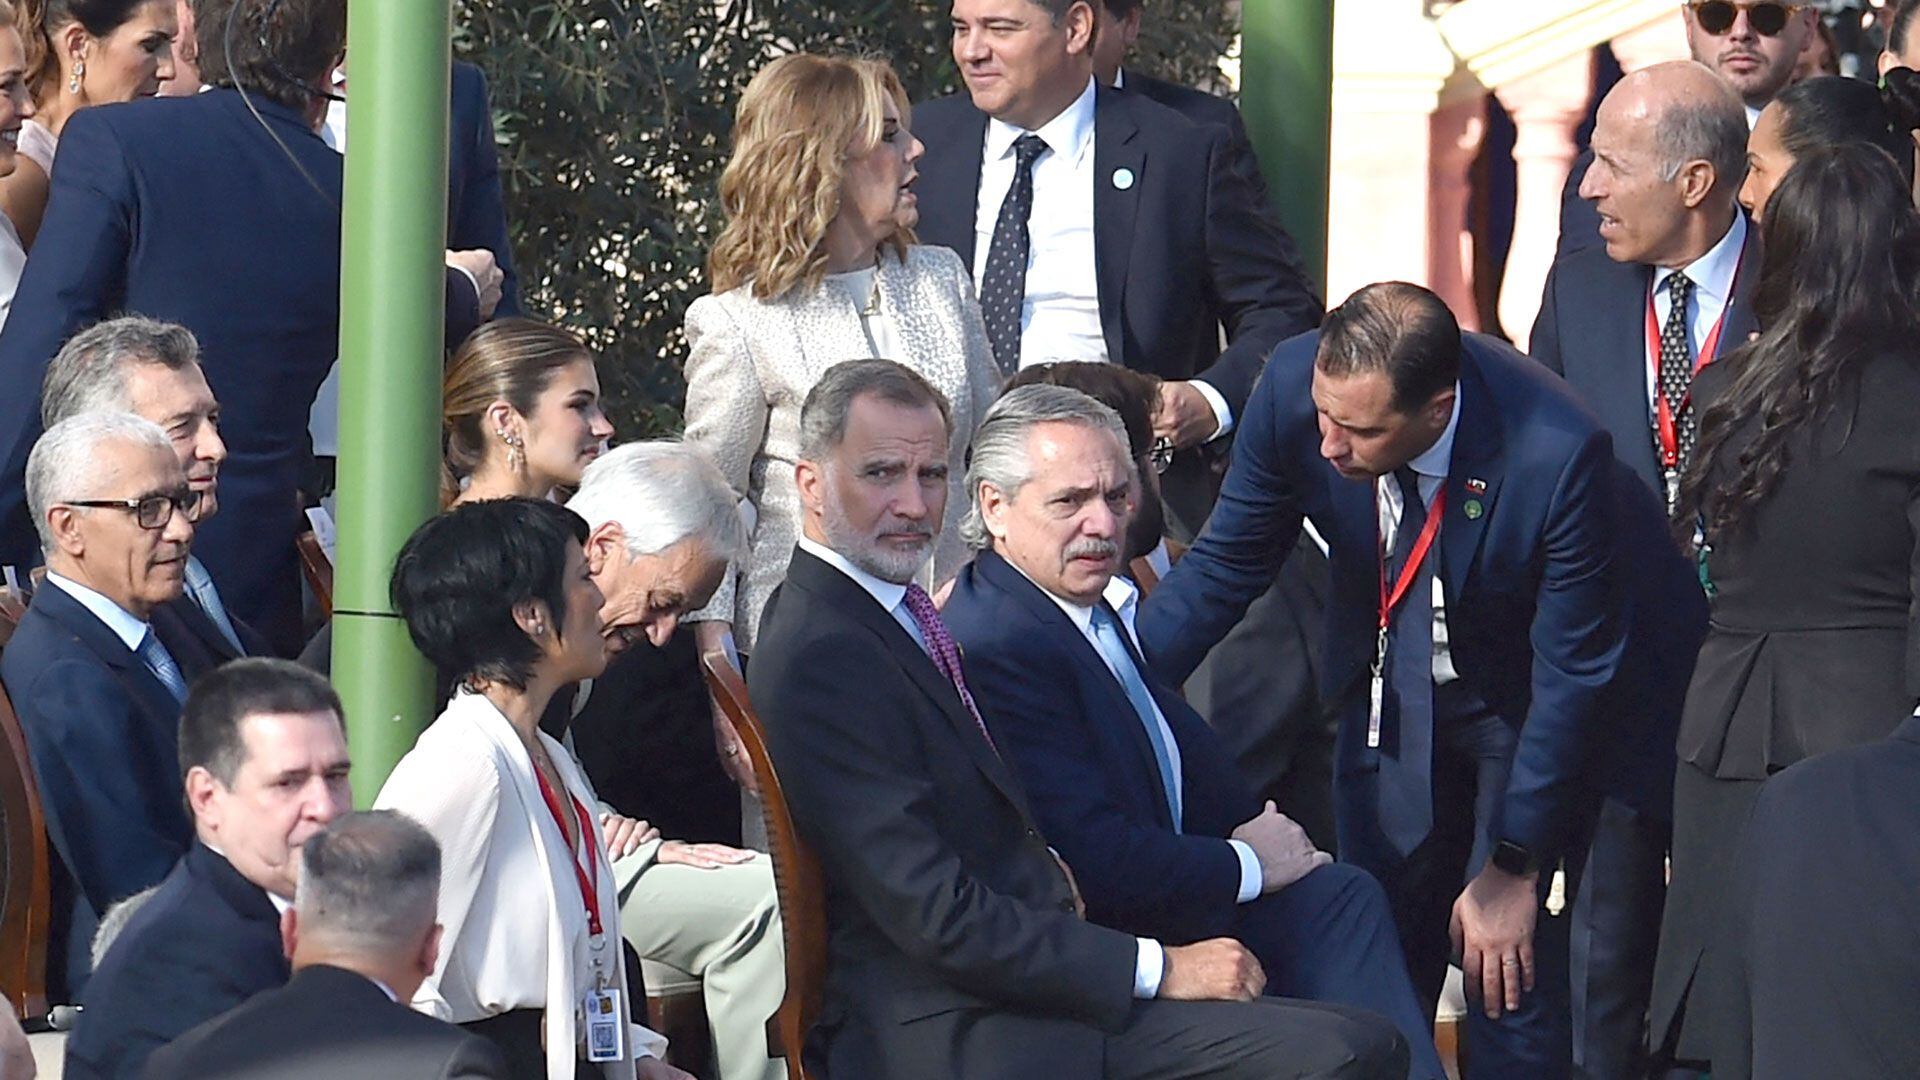 El rey Felipe VI de España y el presidente de Argentina, Alberto Fernández, entre los invitados a la ceremonia (Norberto DUARTE / AFP)